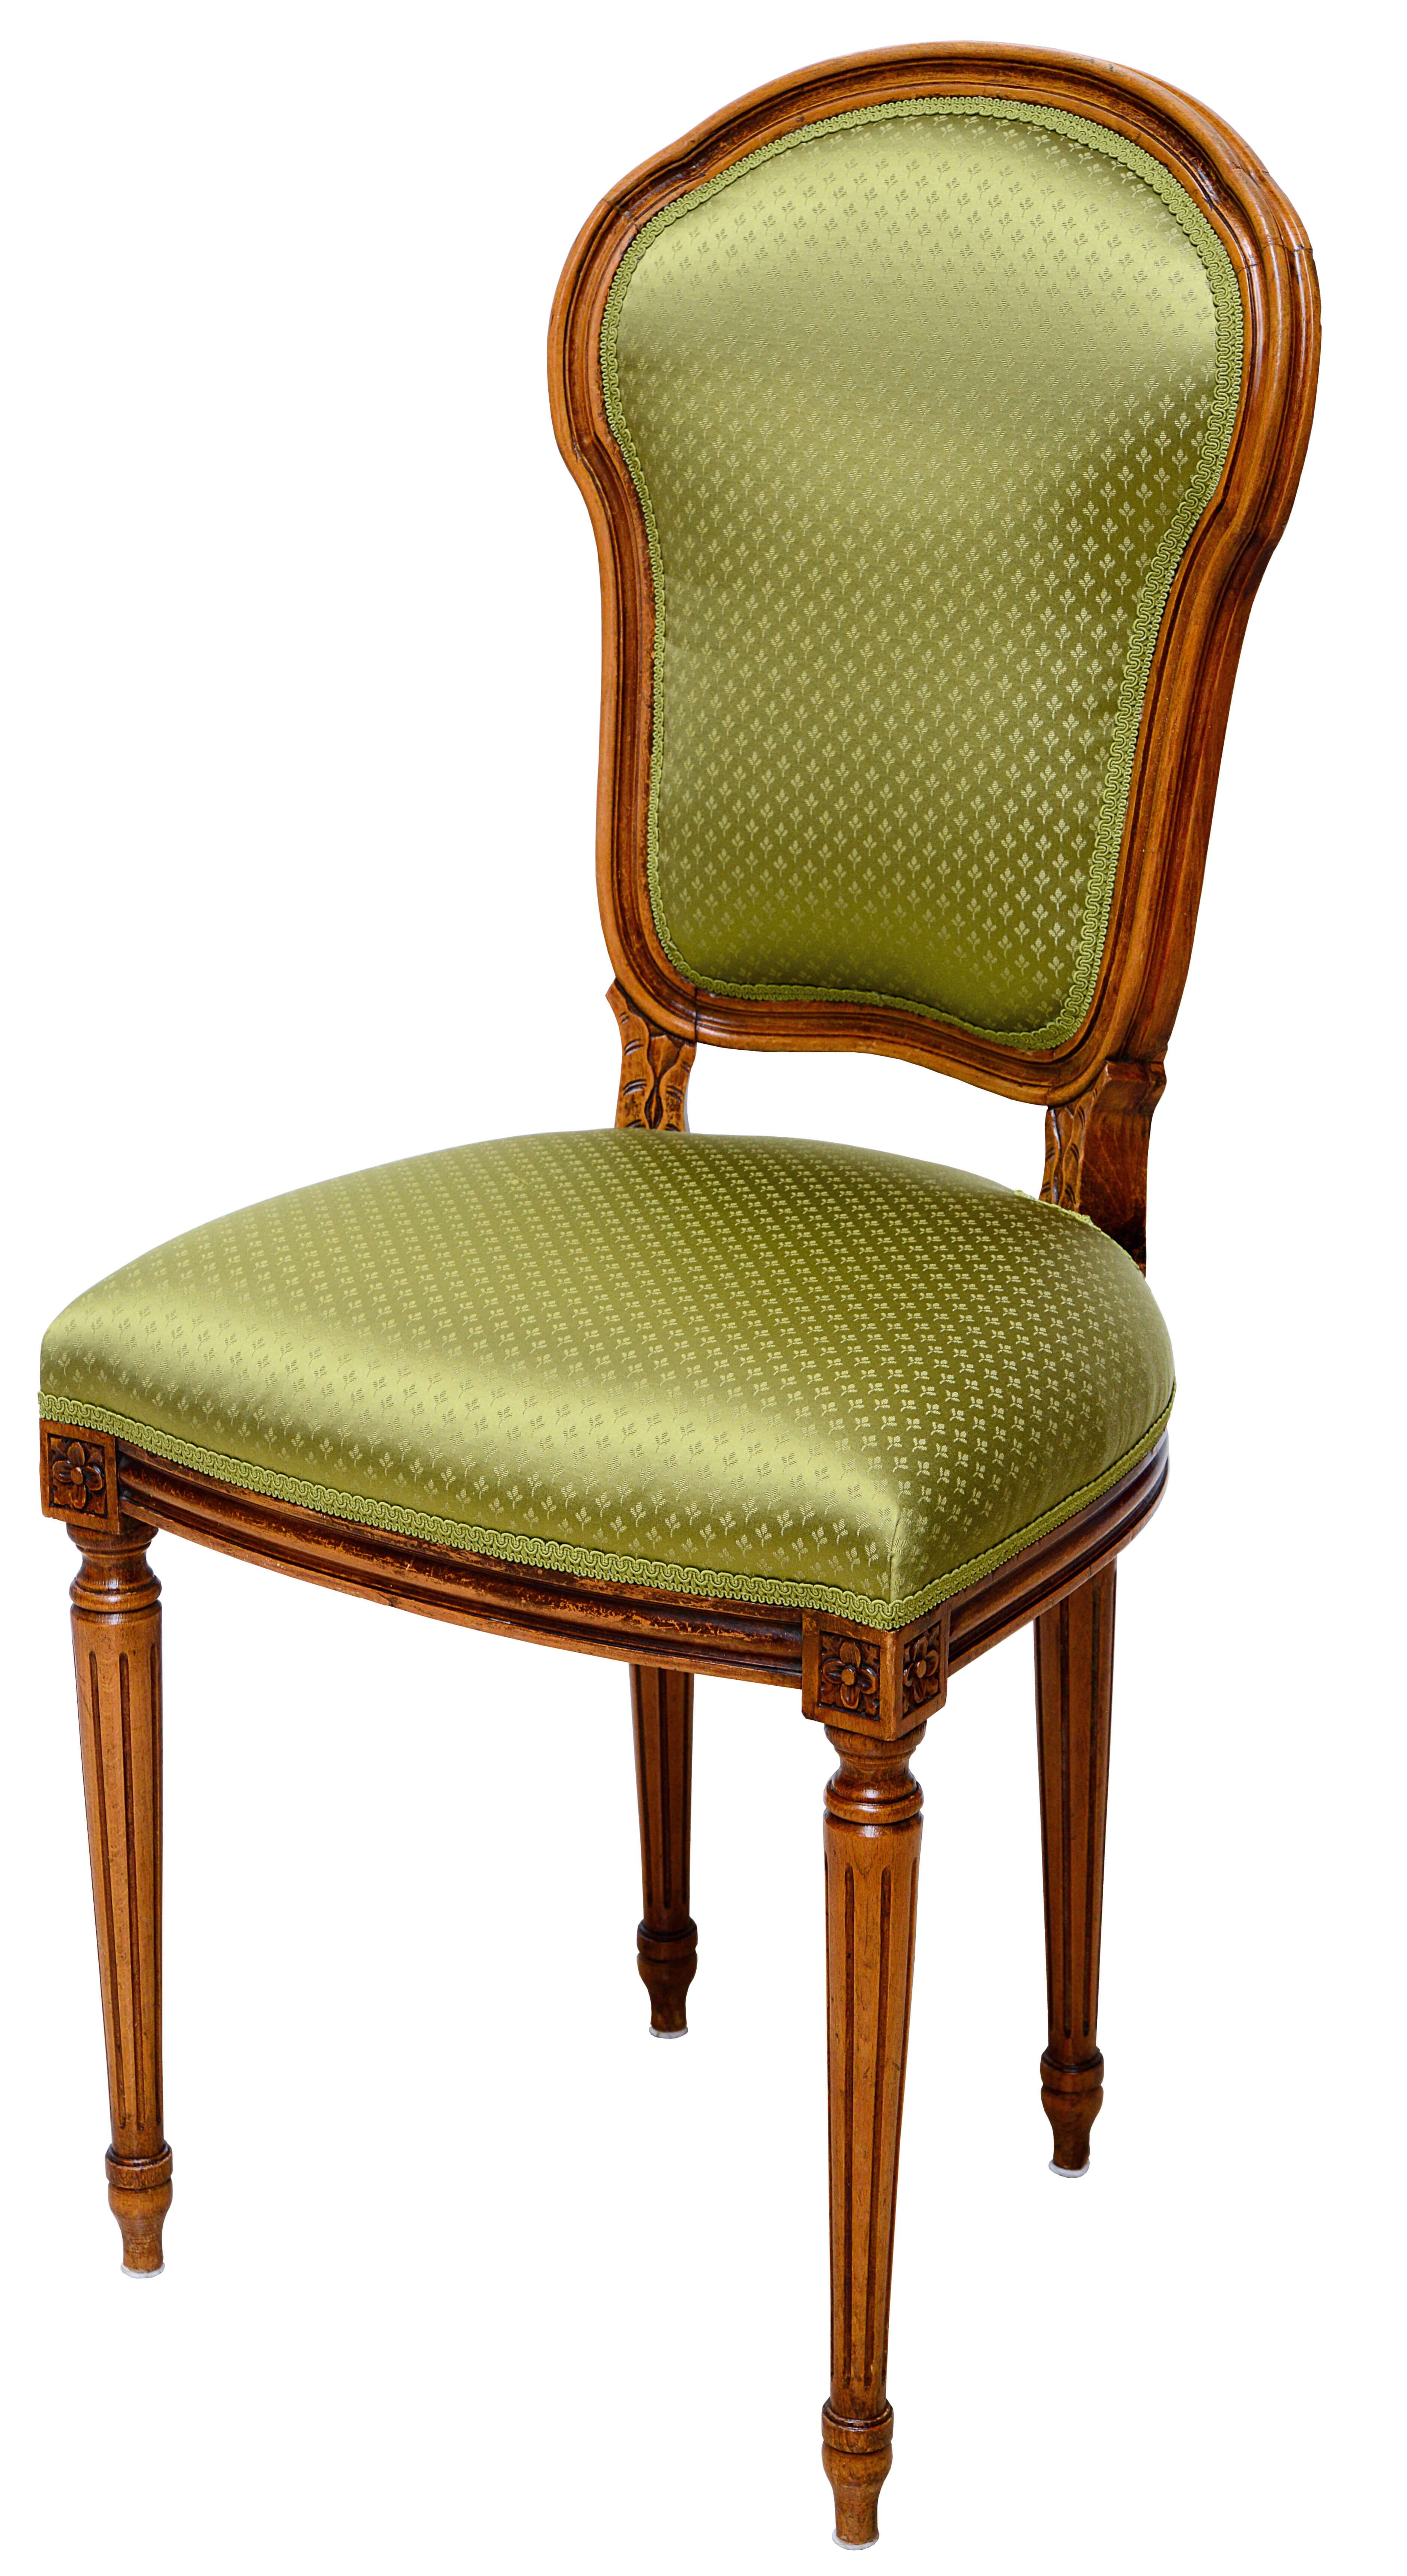 Der Stuhl TIEMON ist eine echte Antiquitaet aus dem 19. Jhdt. und wurde in den eigenen Werkstätten überarbeitet und mit glänzendem grünem Stoff neu gepolstert. Hochwertiges aus zweiter Hand bei Phönix Schöner Leben